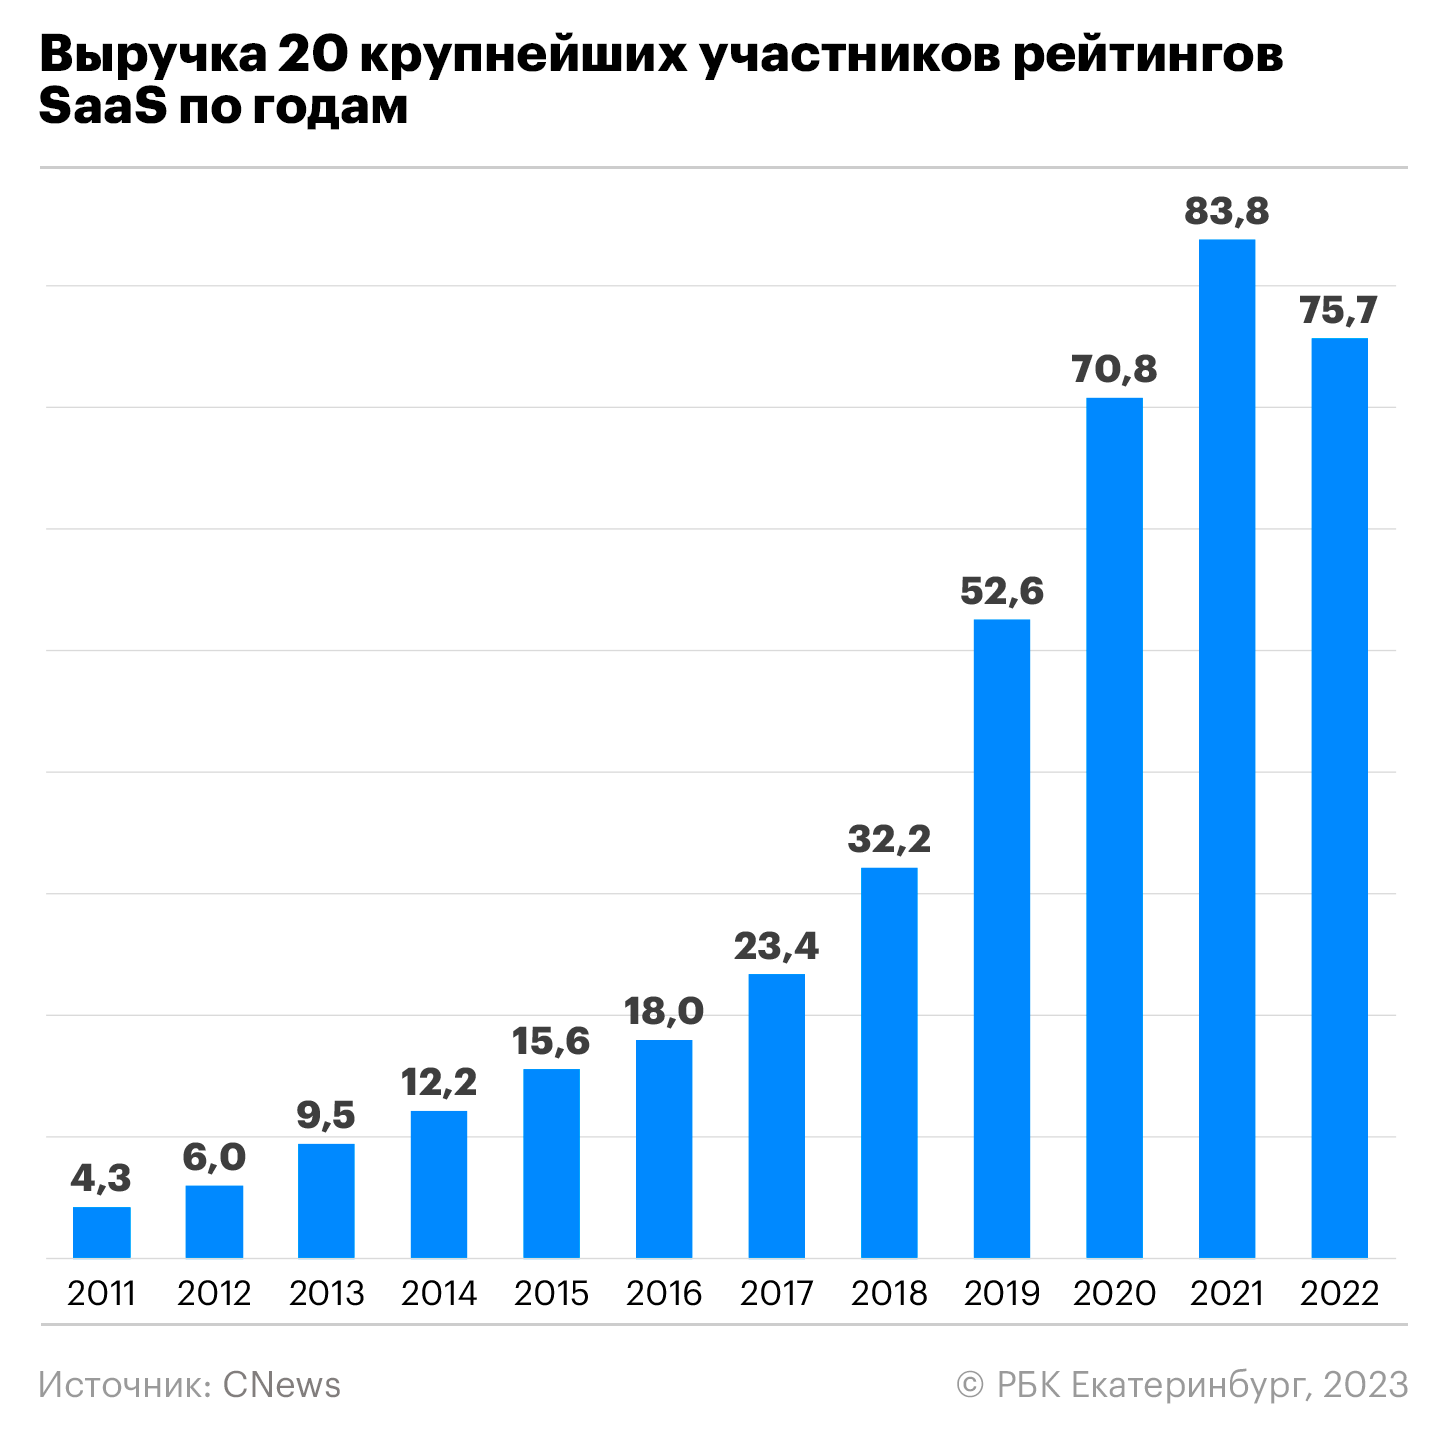 По данным CNews, в 2022 году выручка ТОП-20 провайдеров SaaS составила 75,7 млрд. рублей. Реальные цифры больше: не учтены результат «Ростелекома» и международная выручка ГК Softline, которые не предоставили таких данных.